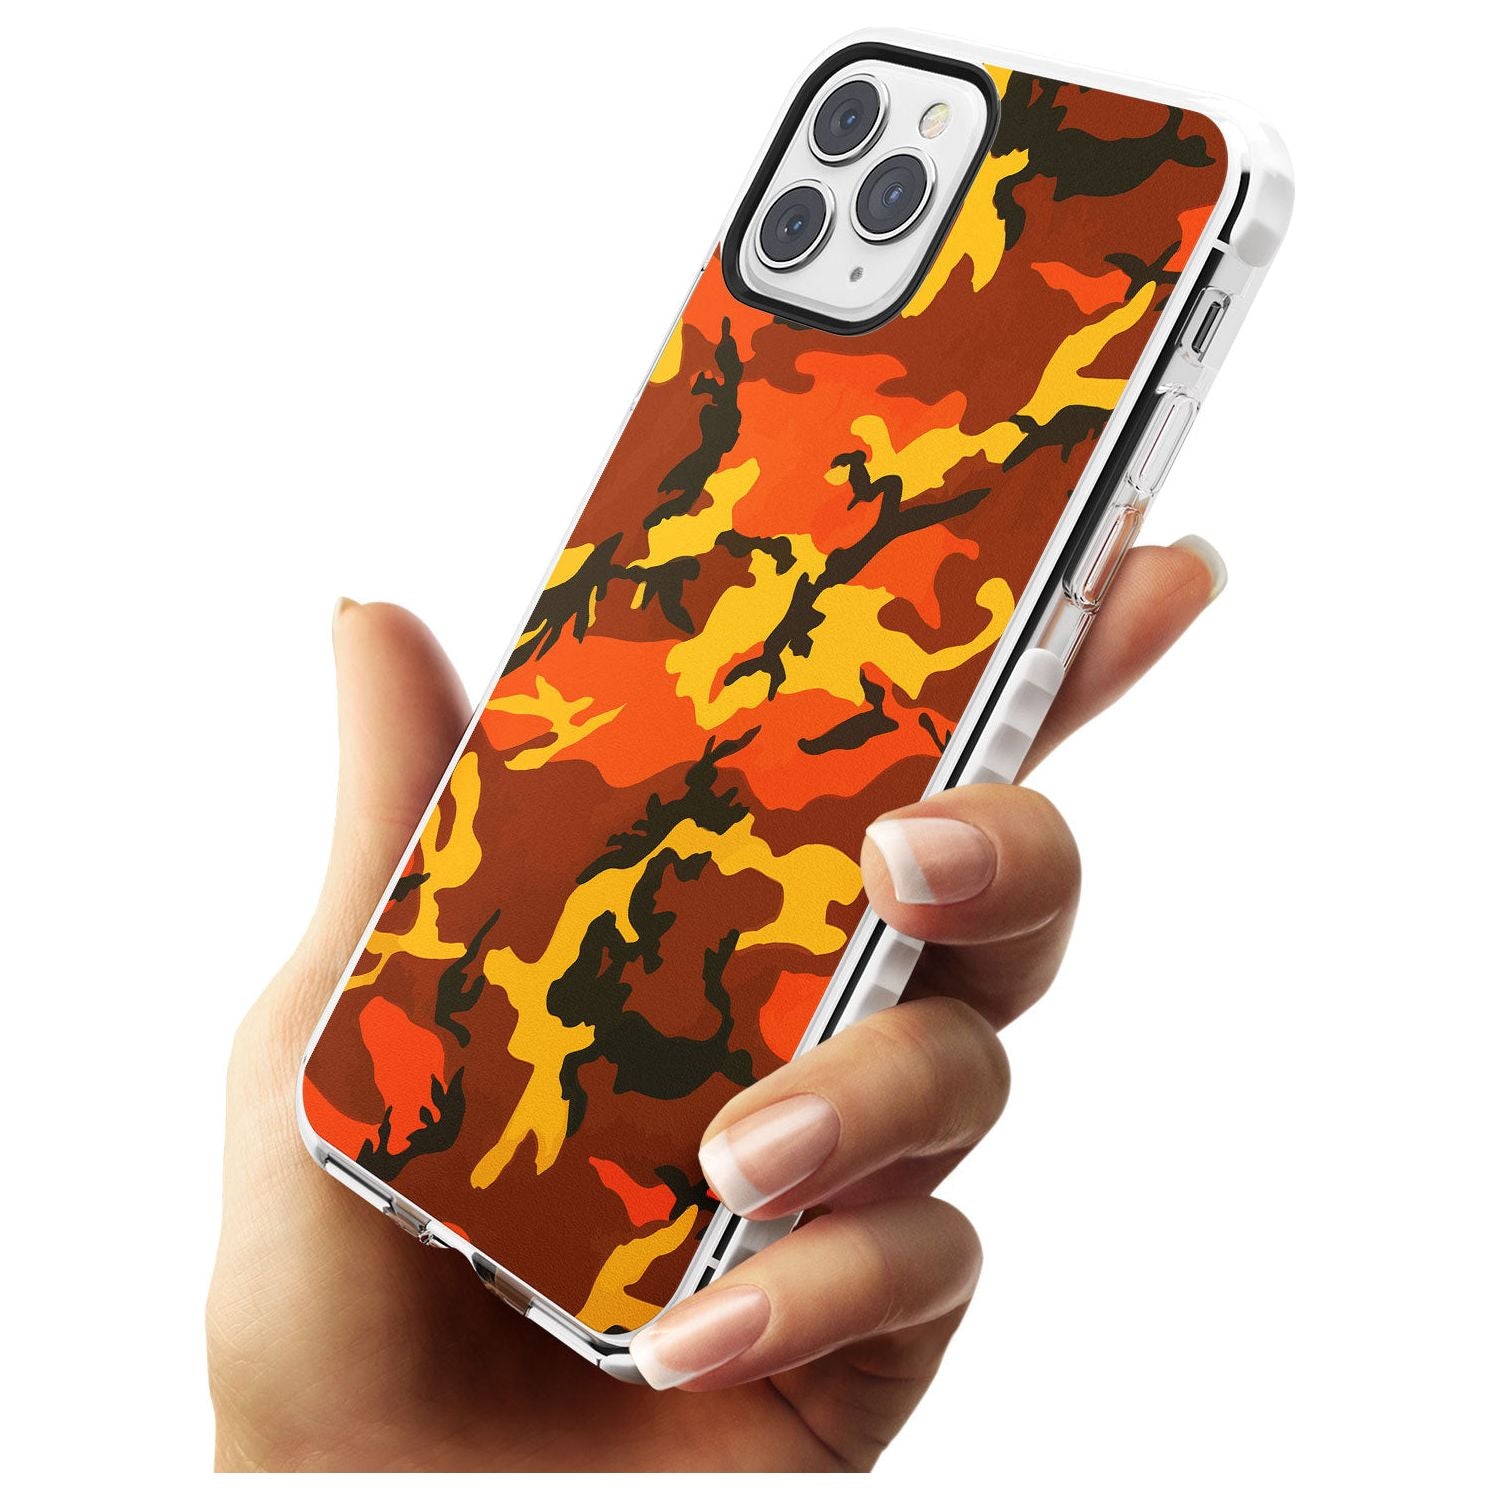 Orange Camo Impact Phone Case for iPhone 11 Pro Max